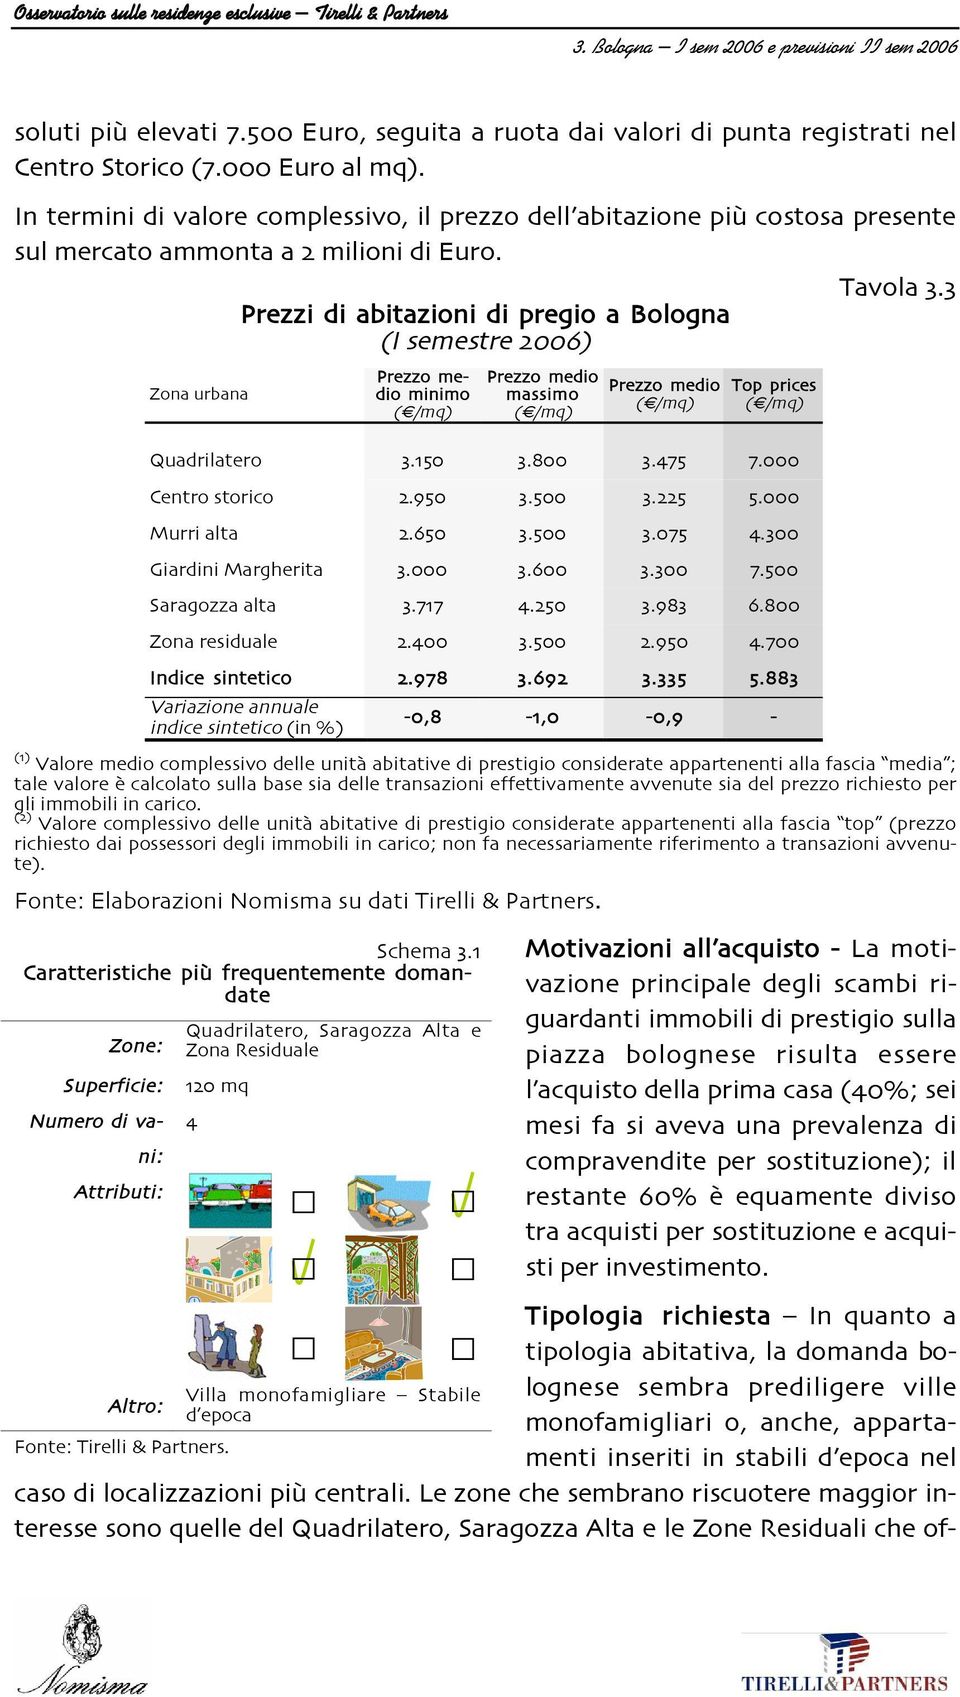 Tavola!"! Prezzi di abitazioni di pregio a Bologna (I semestre $%%&) Zona urbana Prezzo me/ dio minimo (+*mq) Prezzo medio massimo (+*mq) Prezzo medio (+*mq) Top prices (+*mq) Quadrilatero!"'2%!"0%%!